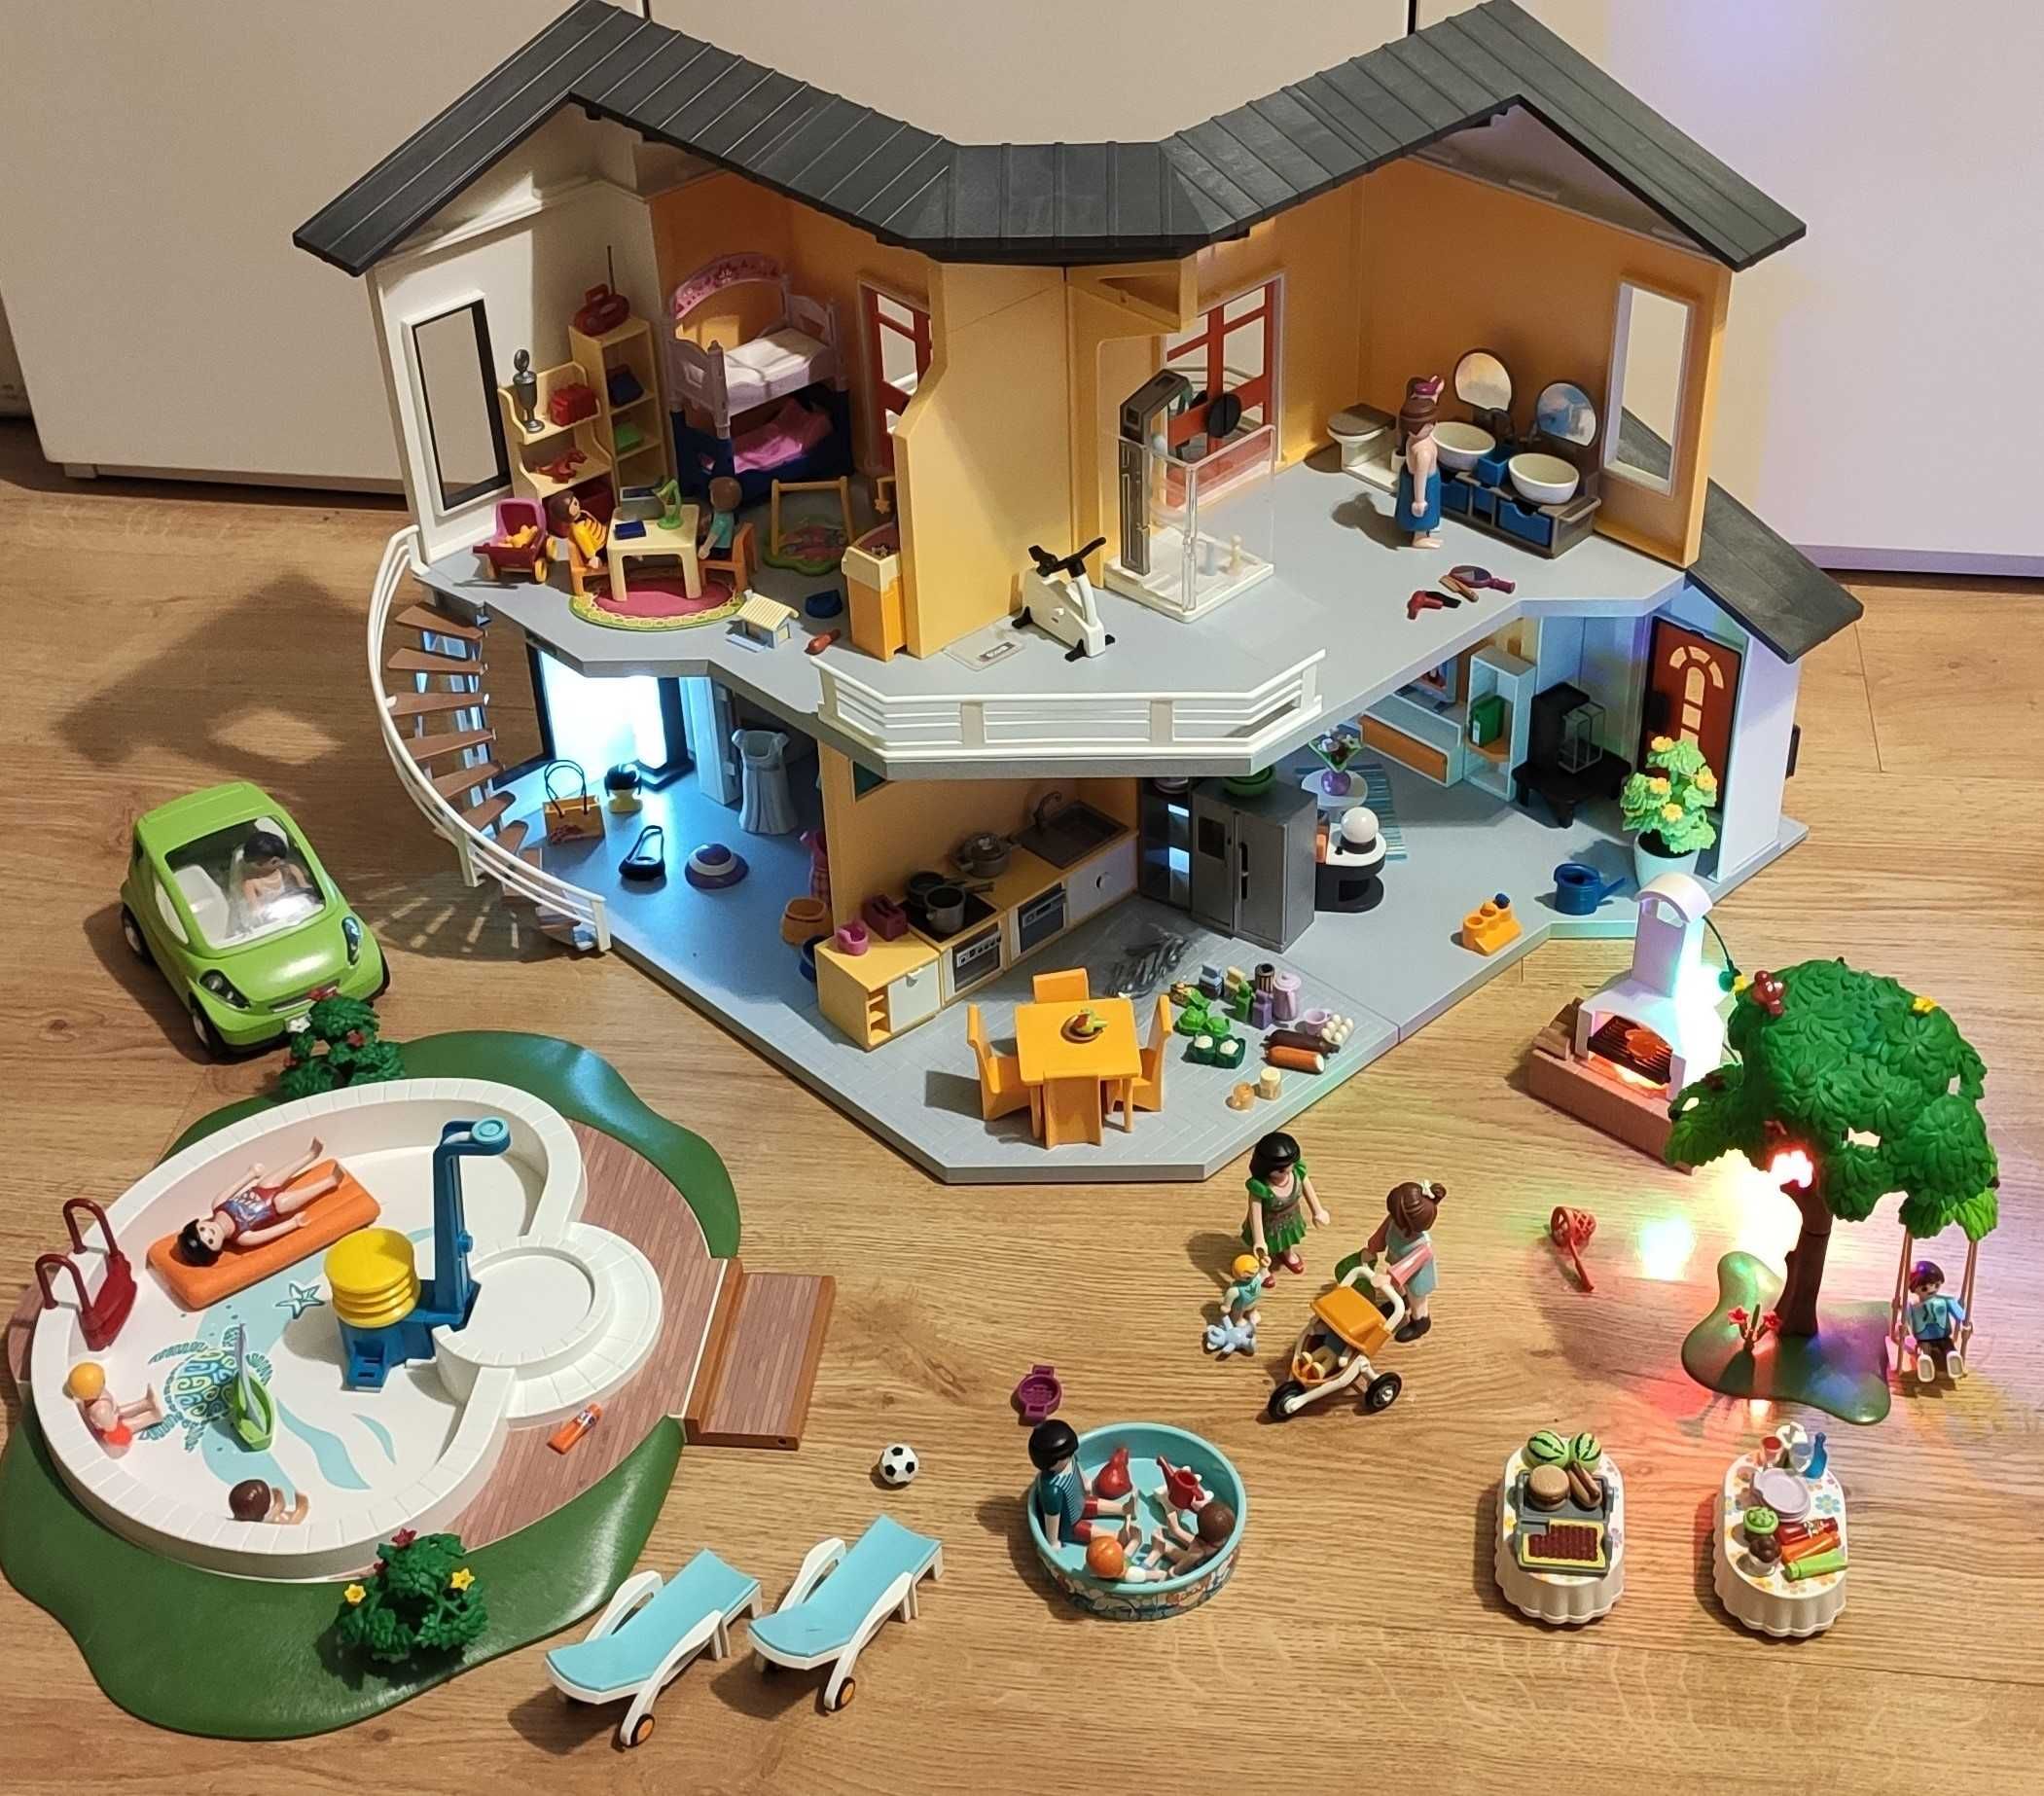 Playmobil - Къща с обзавеждане, болница , полиция и още много сетове.